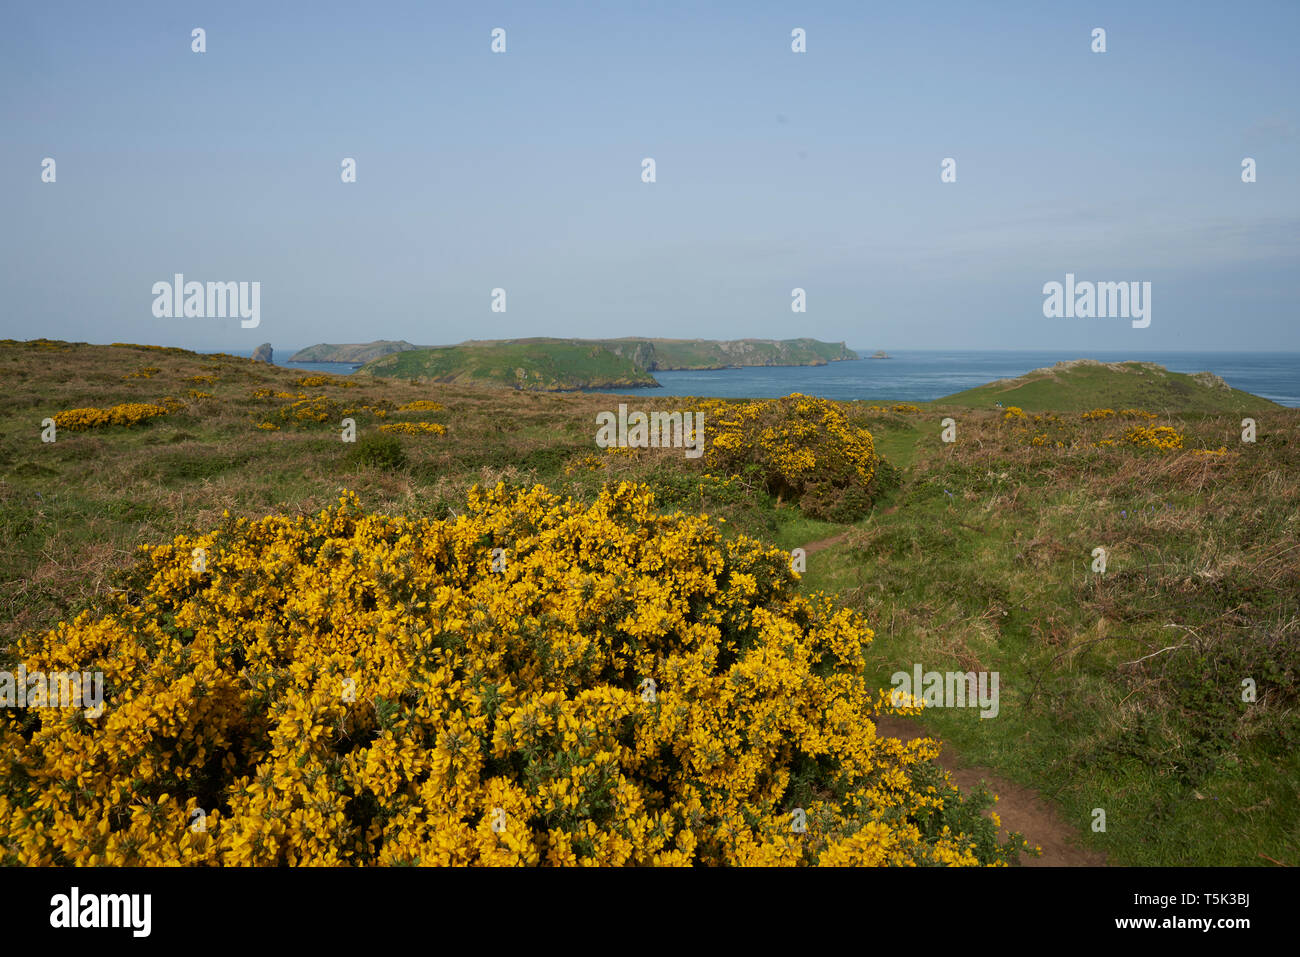 Frühling Blumen an der Küste von Pembrokeshire in Wales, Vereinigtes Königreich. Insel Skomer im Hintergrund. Stockfoto